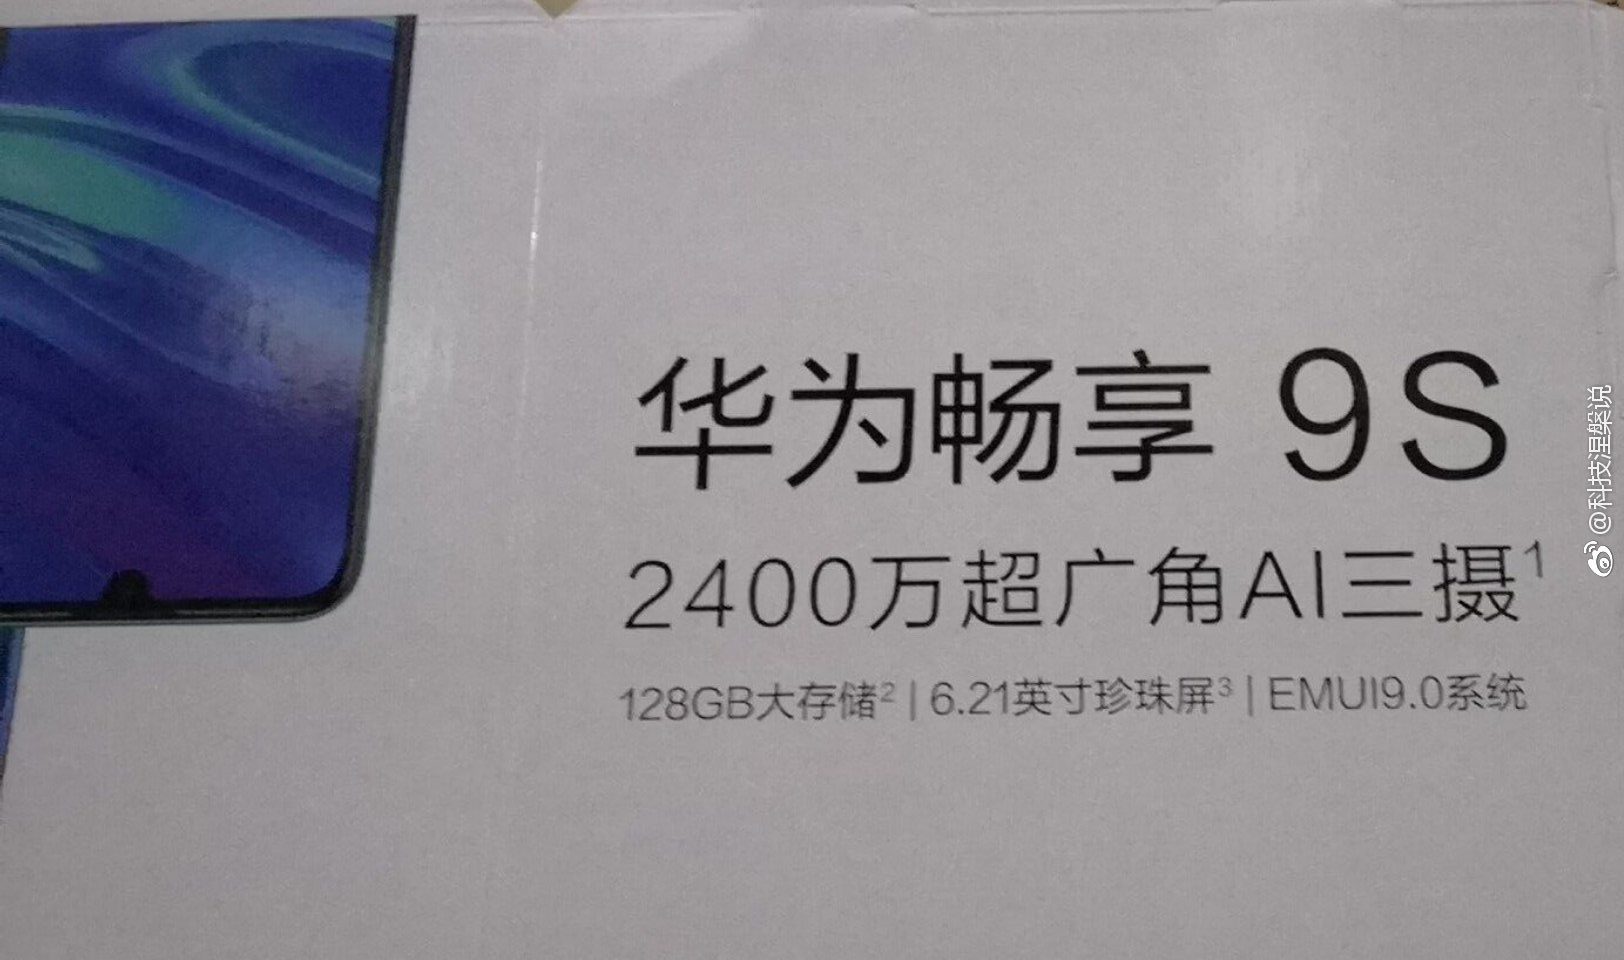 Huawei Enjoy 9s poster